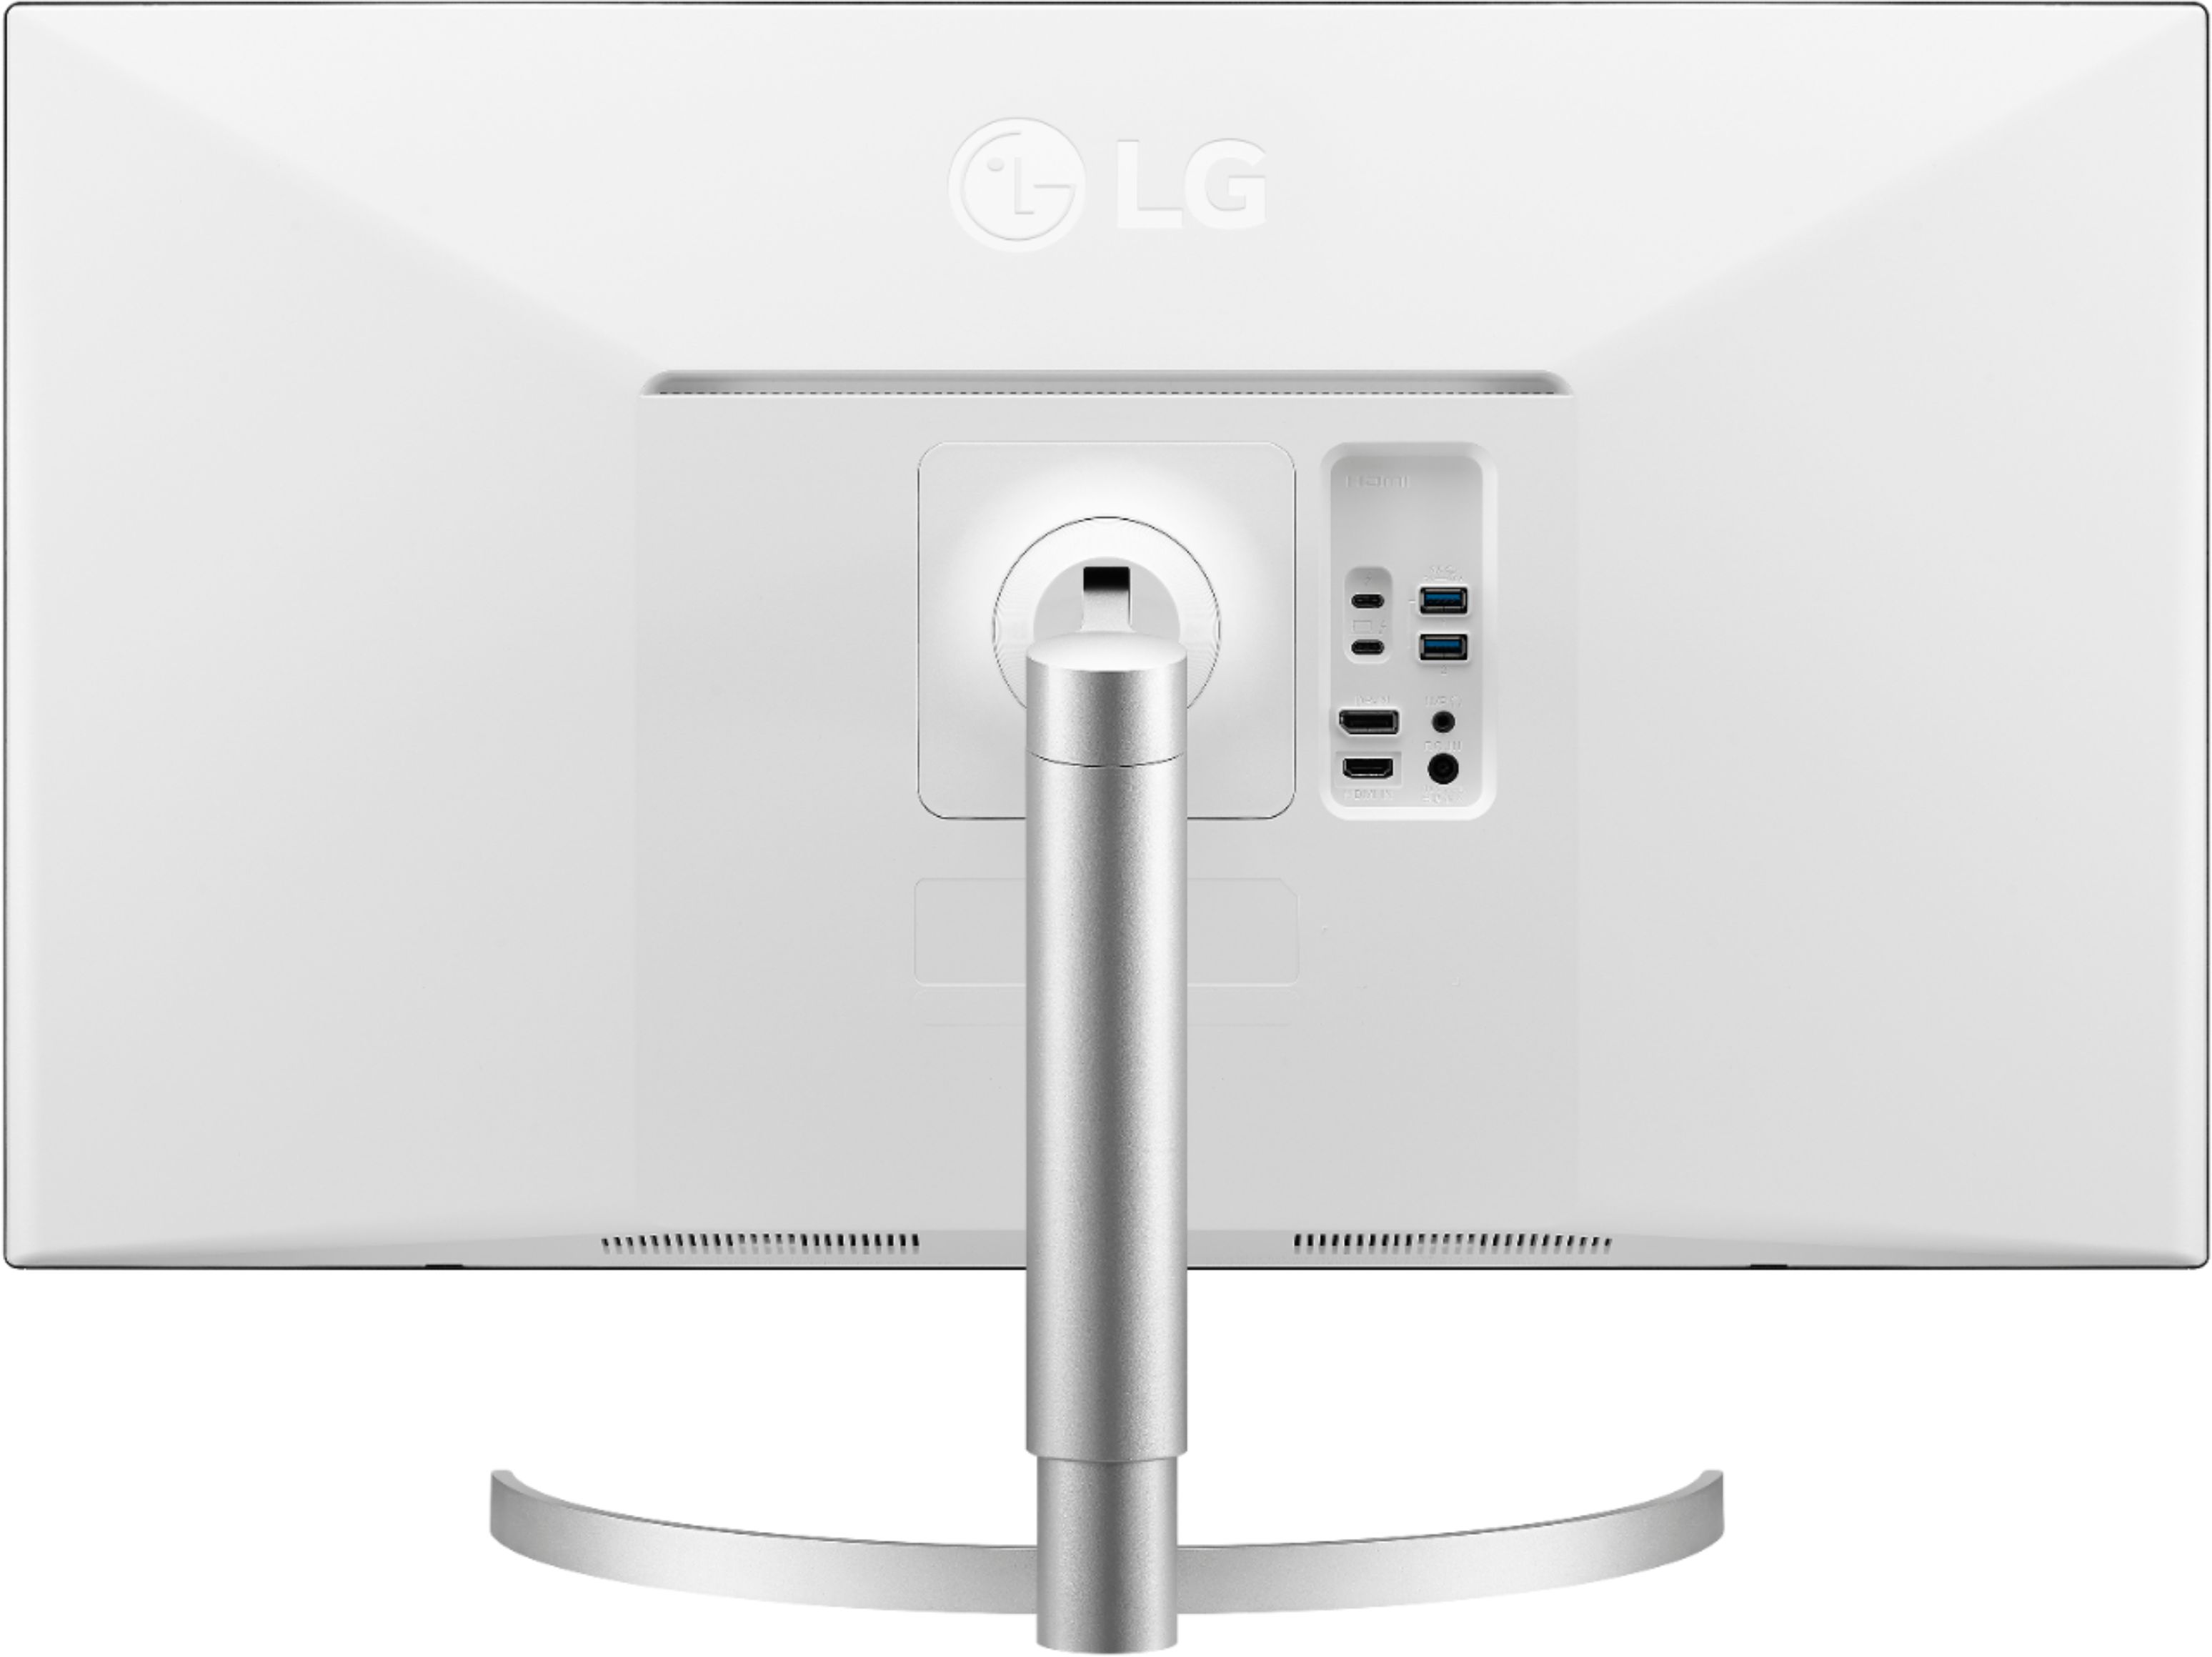 Back View: LG - 21.9 Cu. Ft. French Door-in-Door Counter-Depth Refrigerator - Black stainless steel